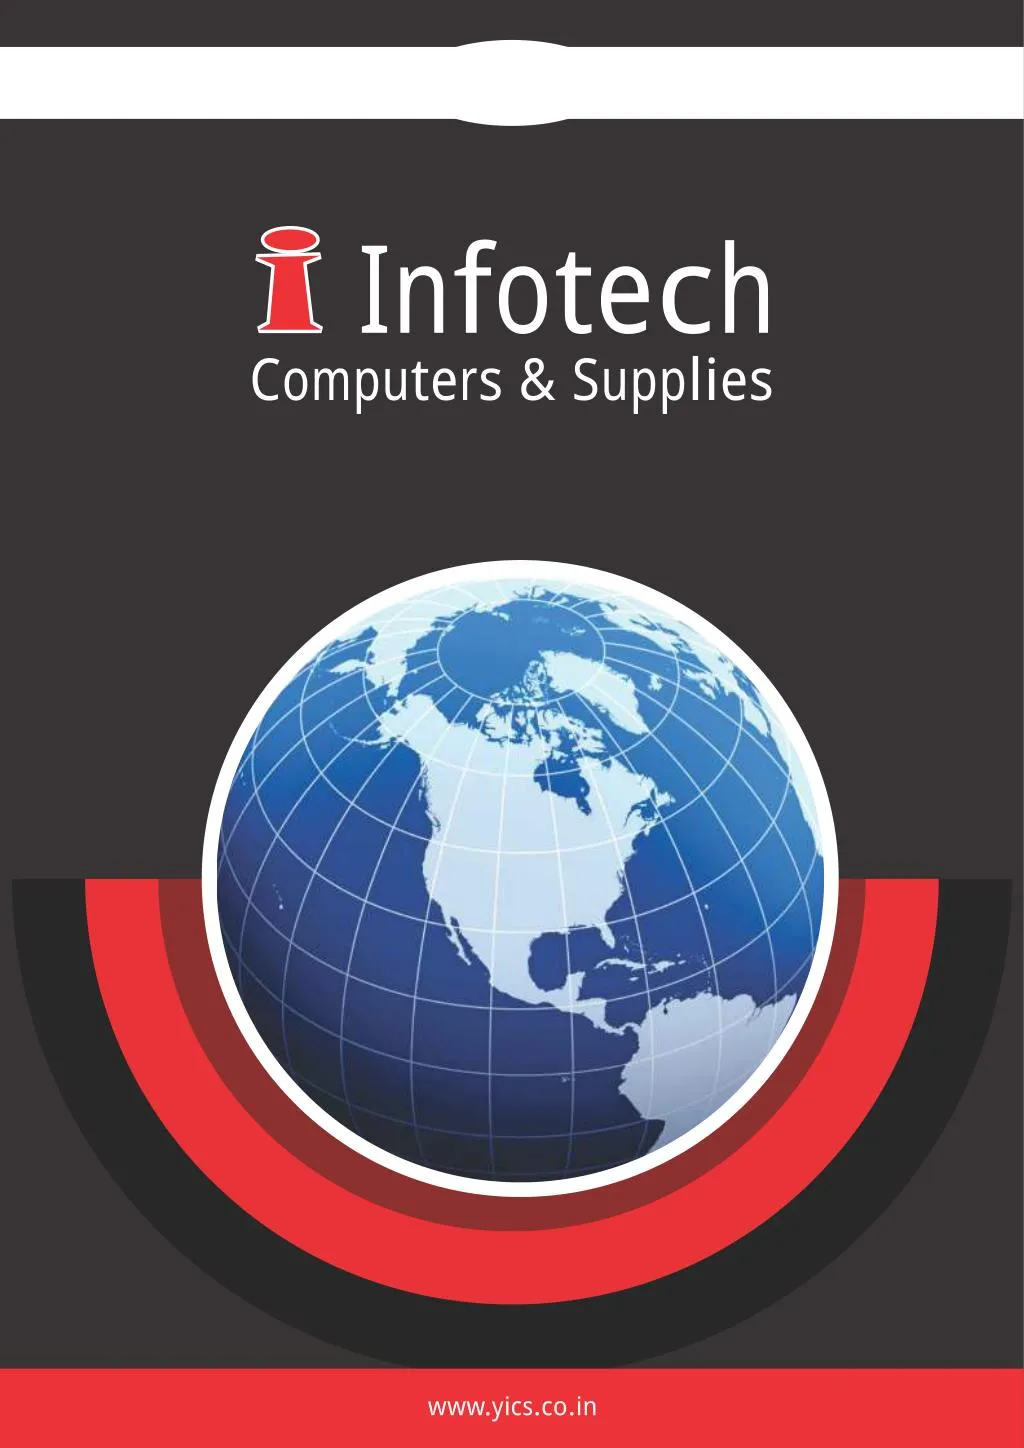 infotech computers supplies